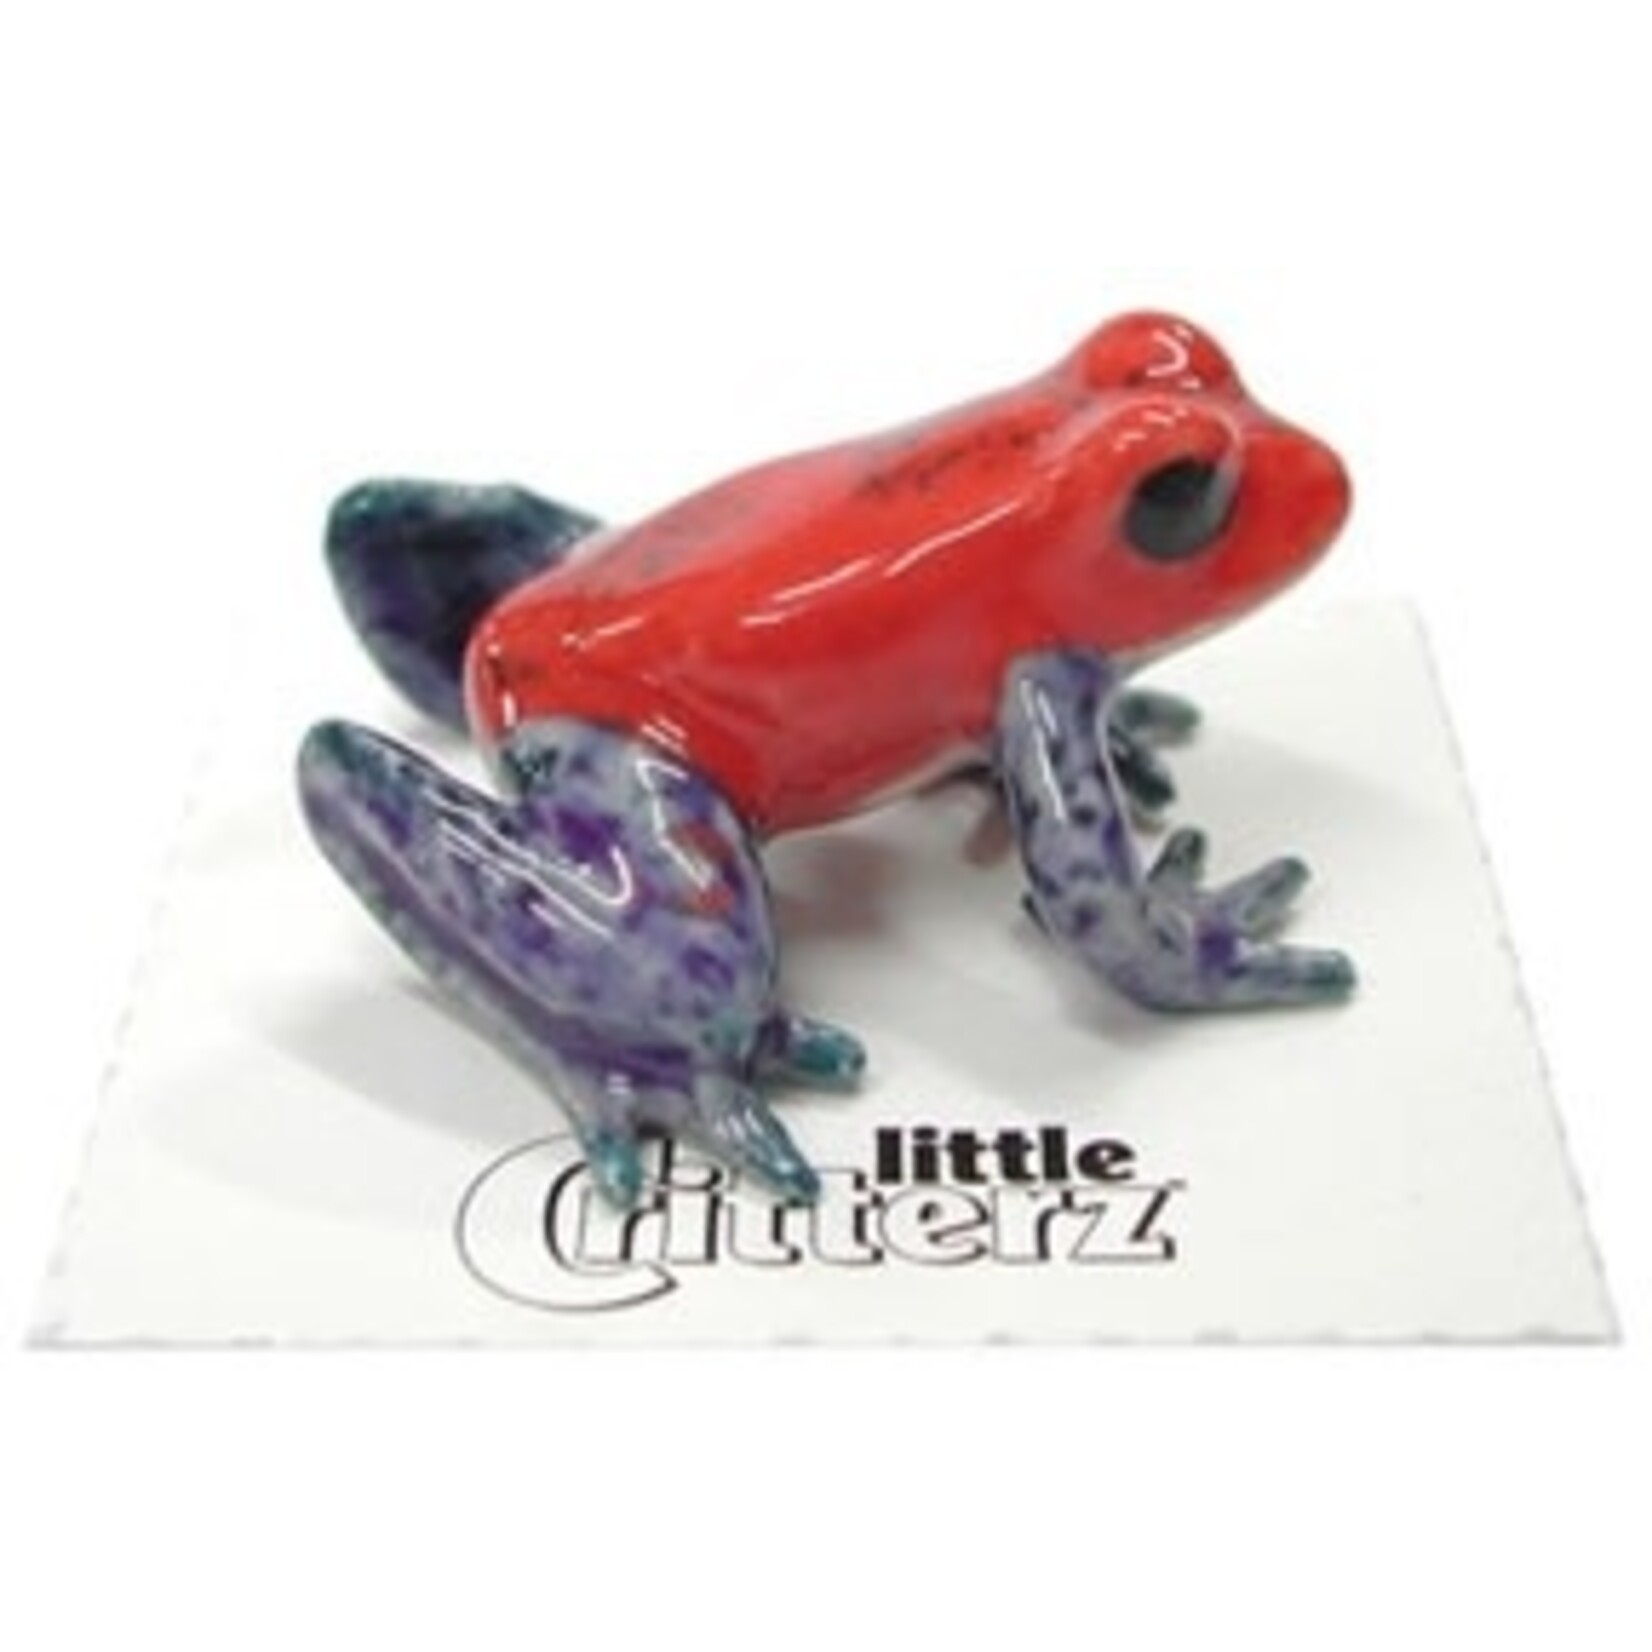 Little Critterz Strawberry Dart Frog